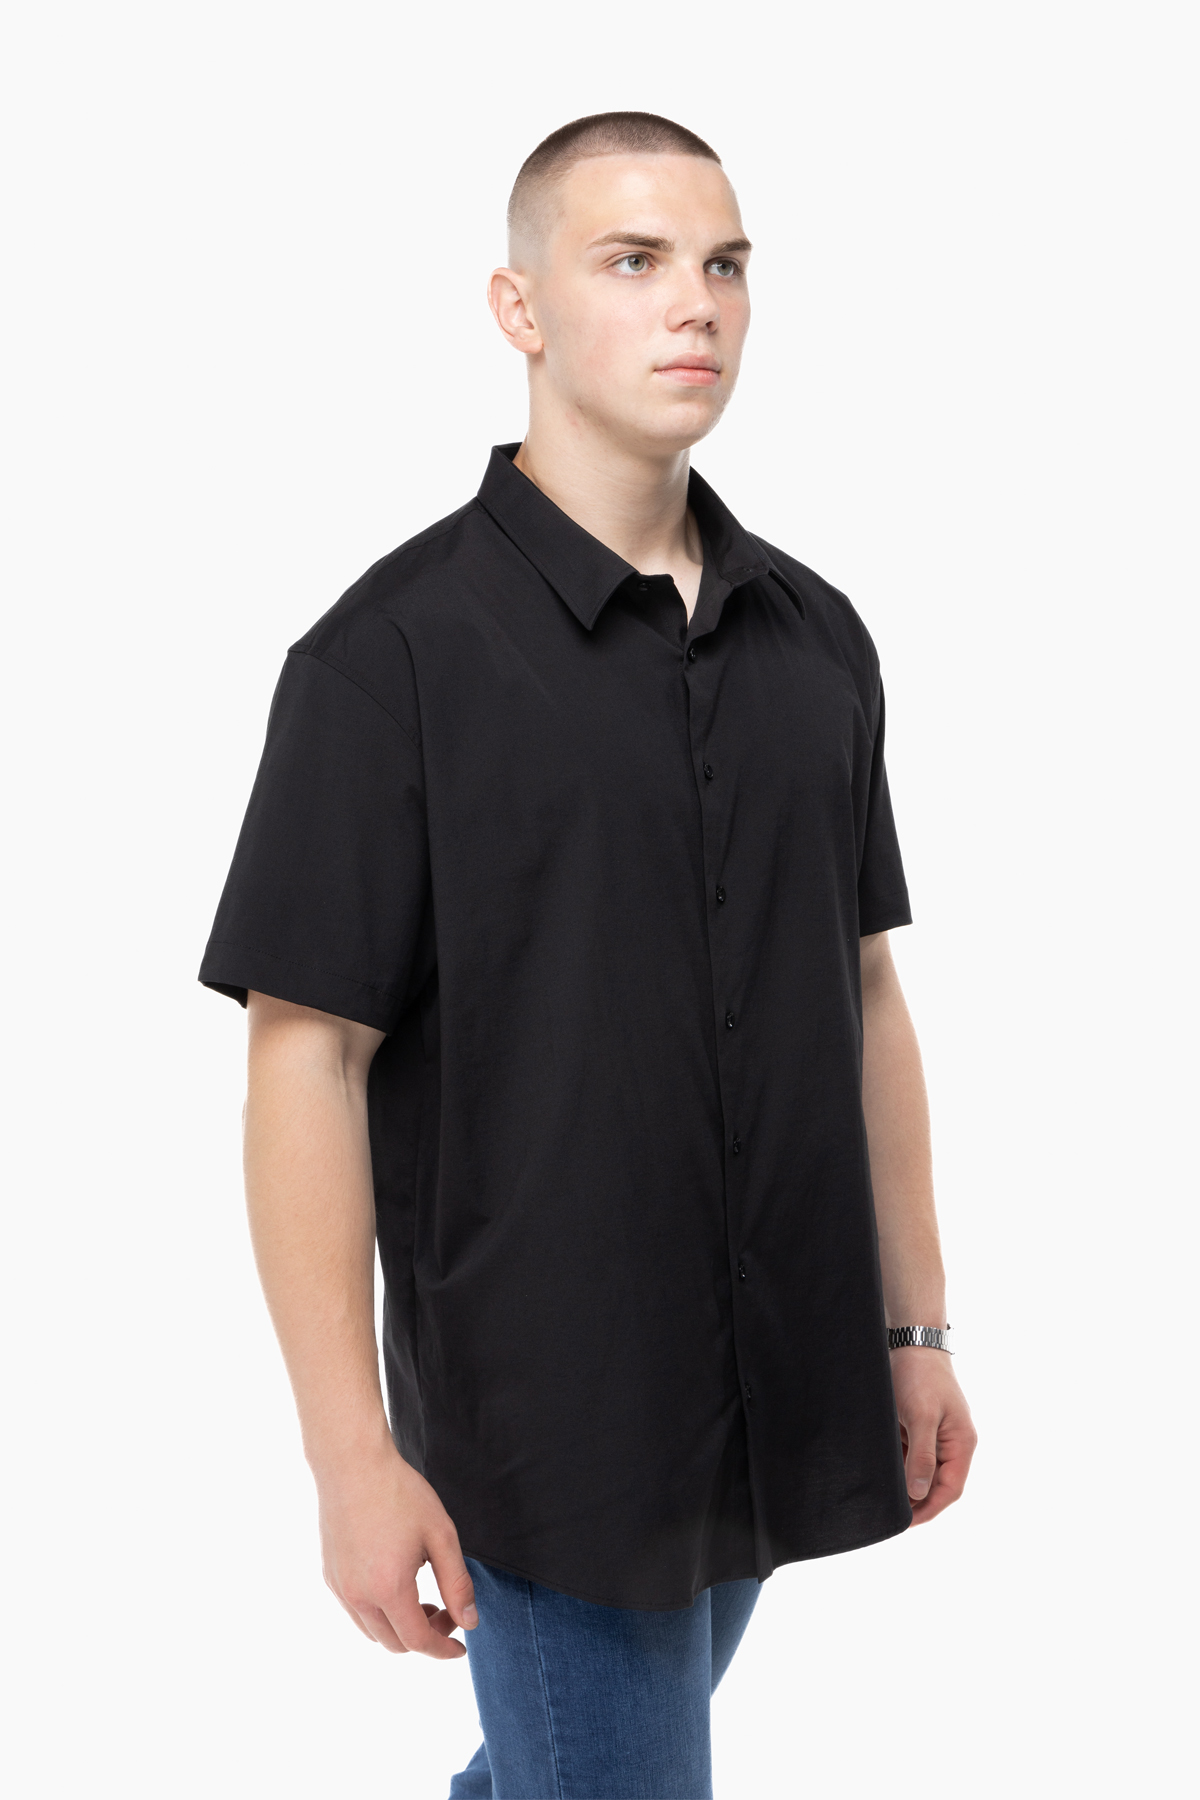 Рубашка классическая однотонная мужская Redpolo 3785 4XL Черный (2000989848059)